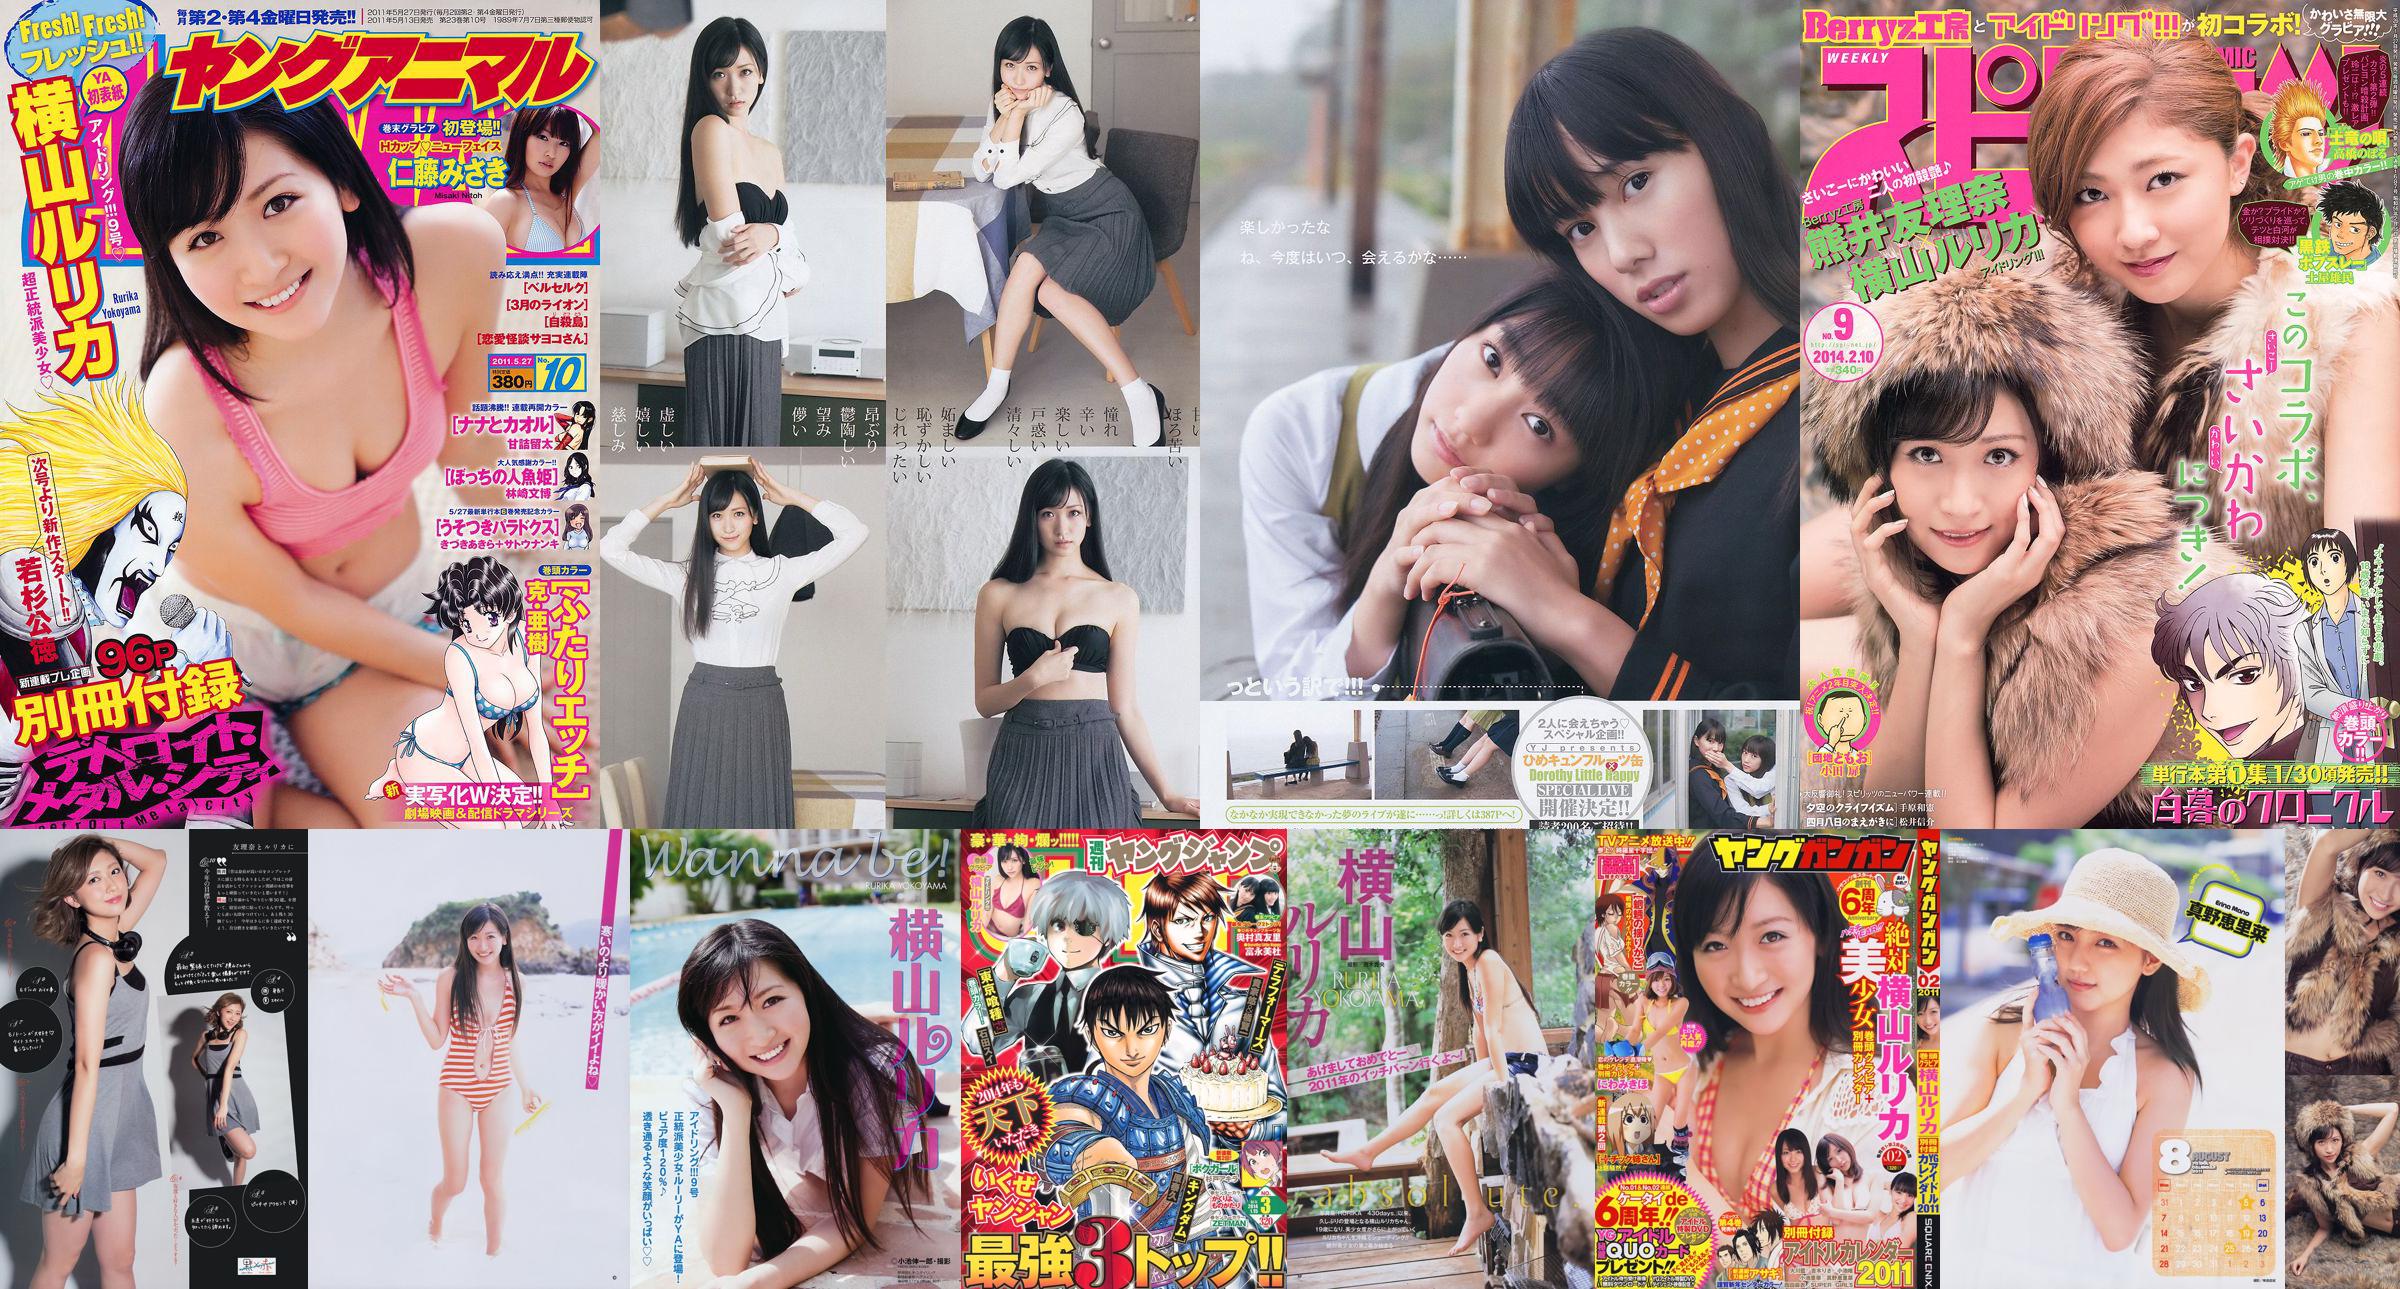 [Young Gangan] Rurika Yokoyama 2011 No. 02 Photo Magazine No.225134 Trang 4